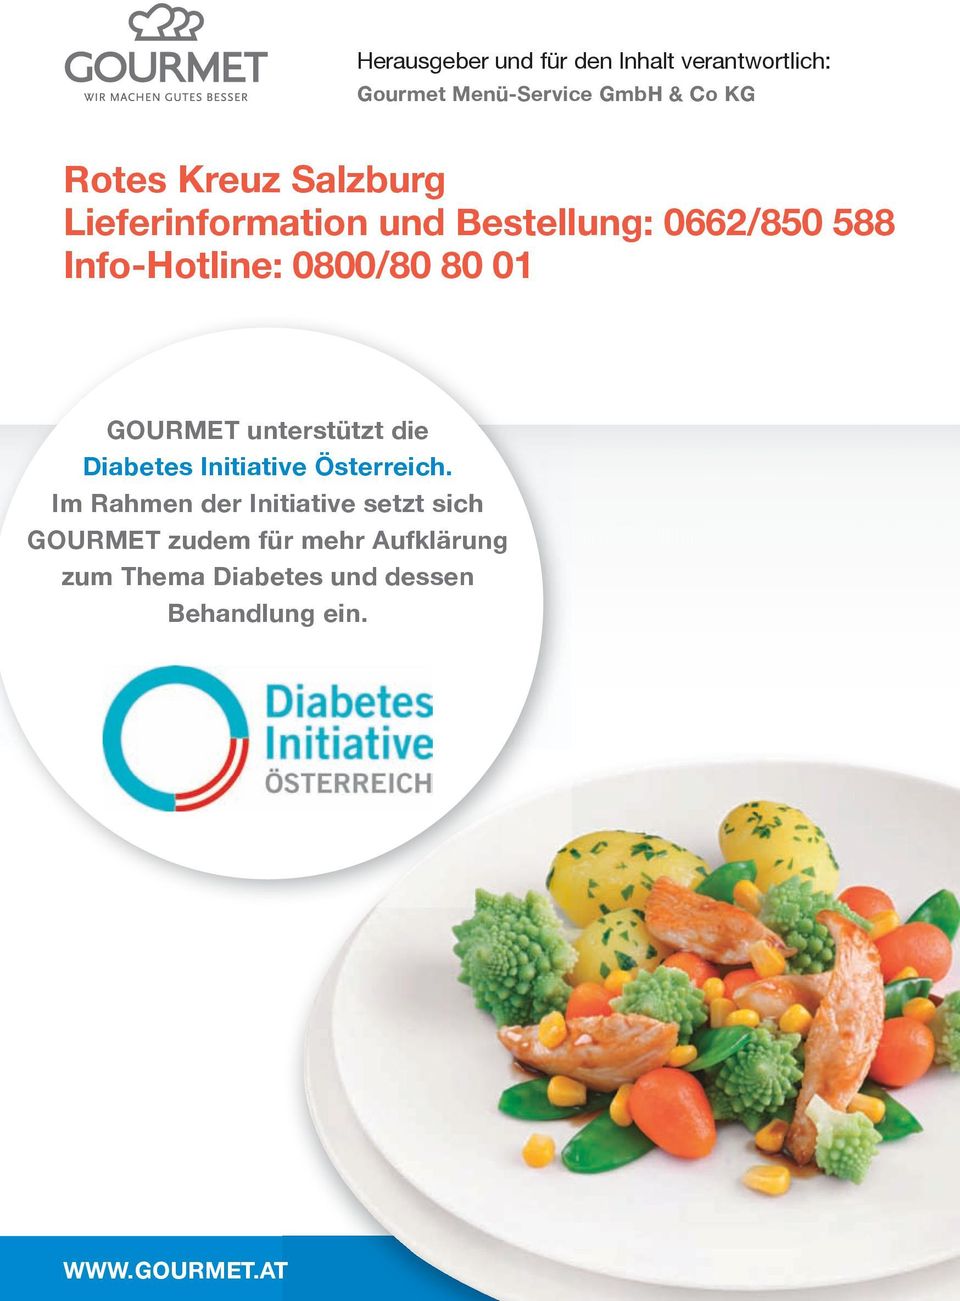 GouRMet unterstützt die Diabetes Initiative Österreich.